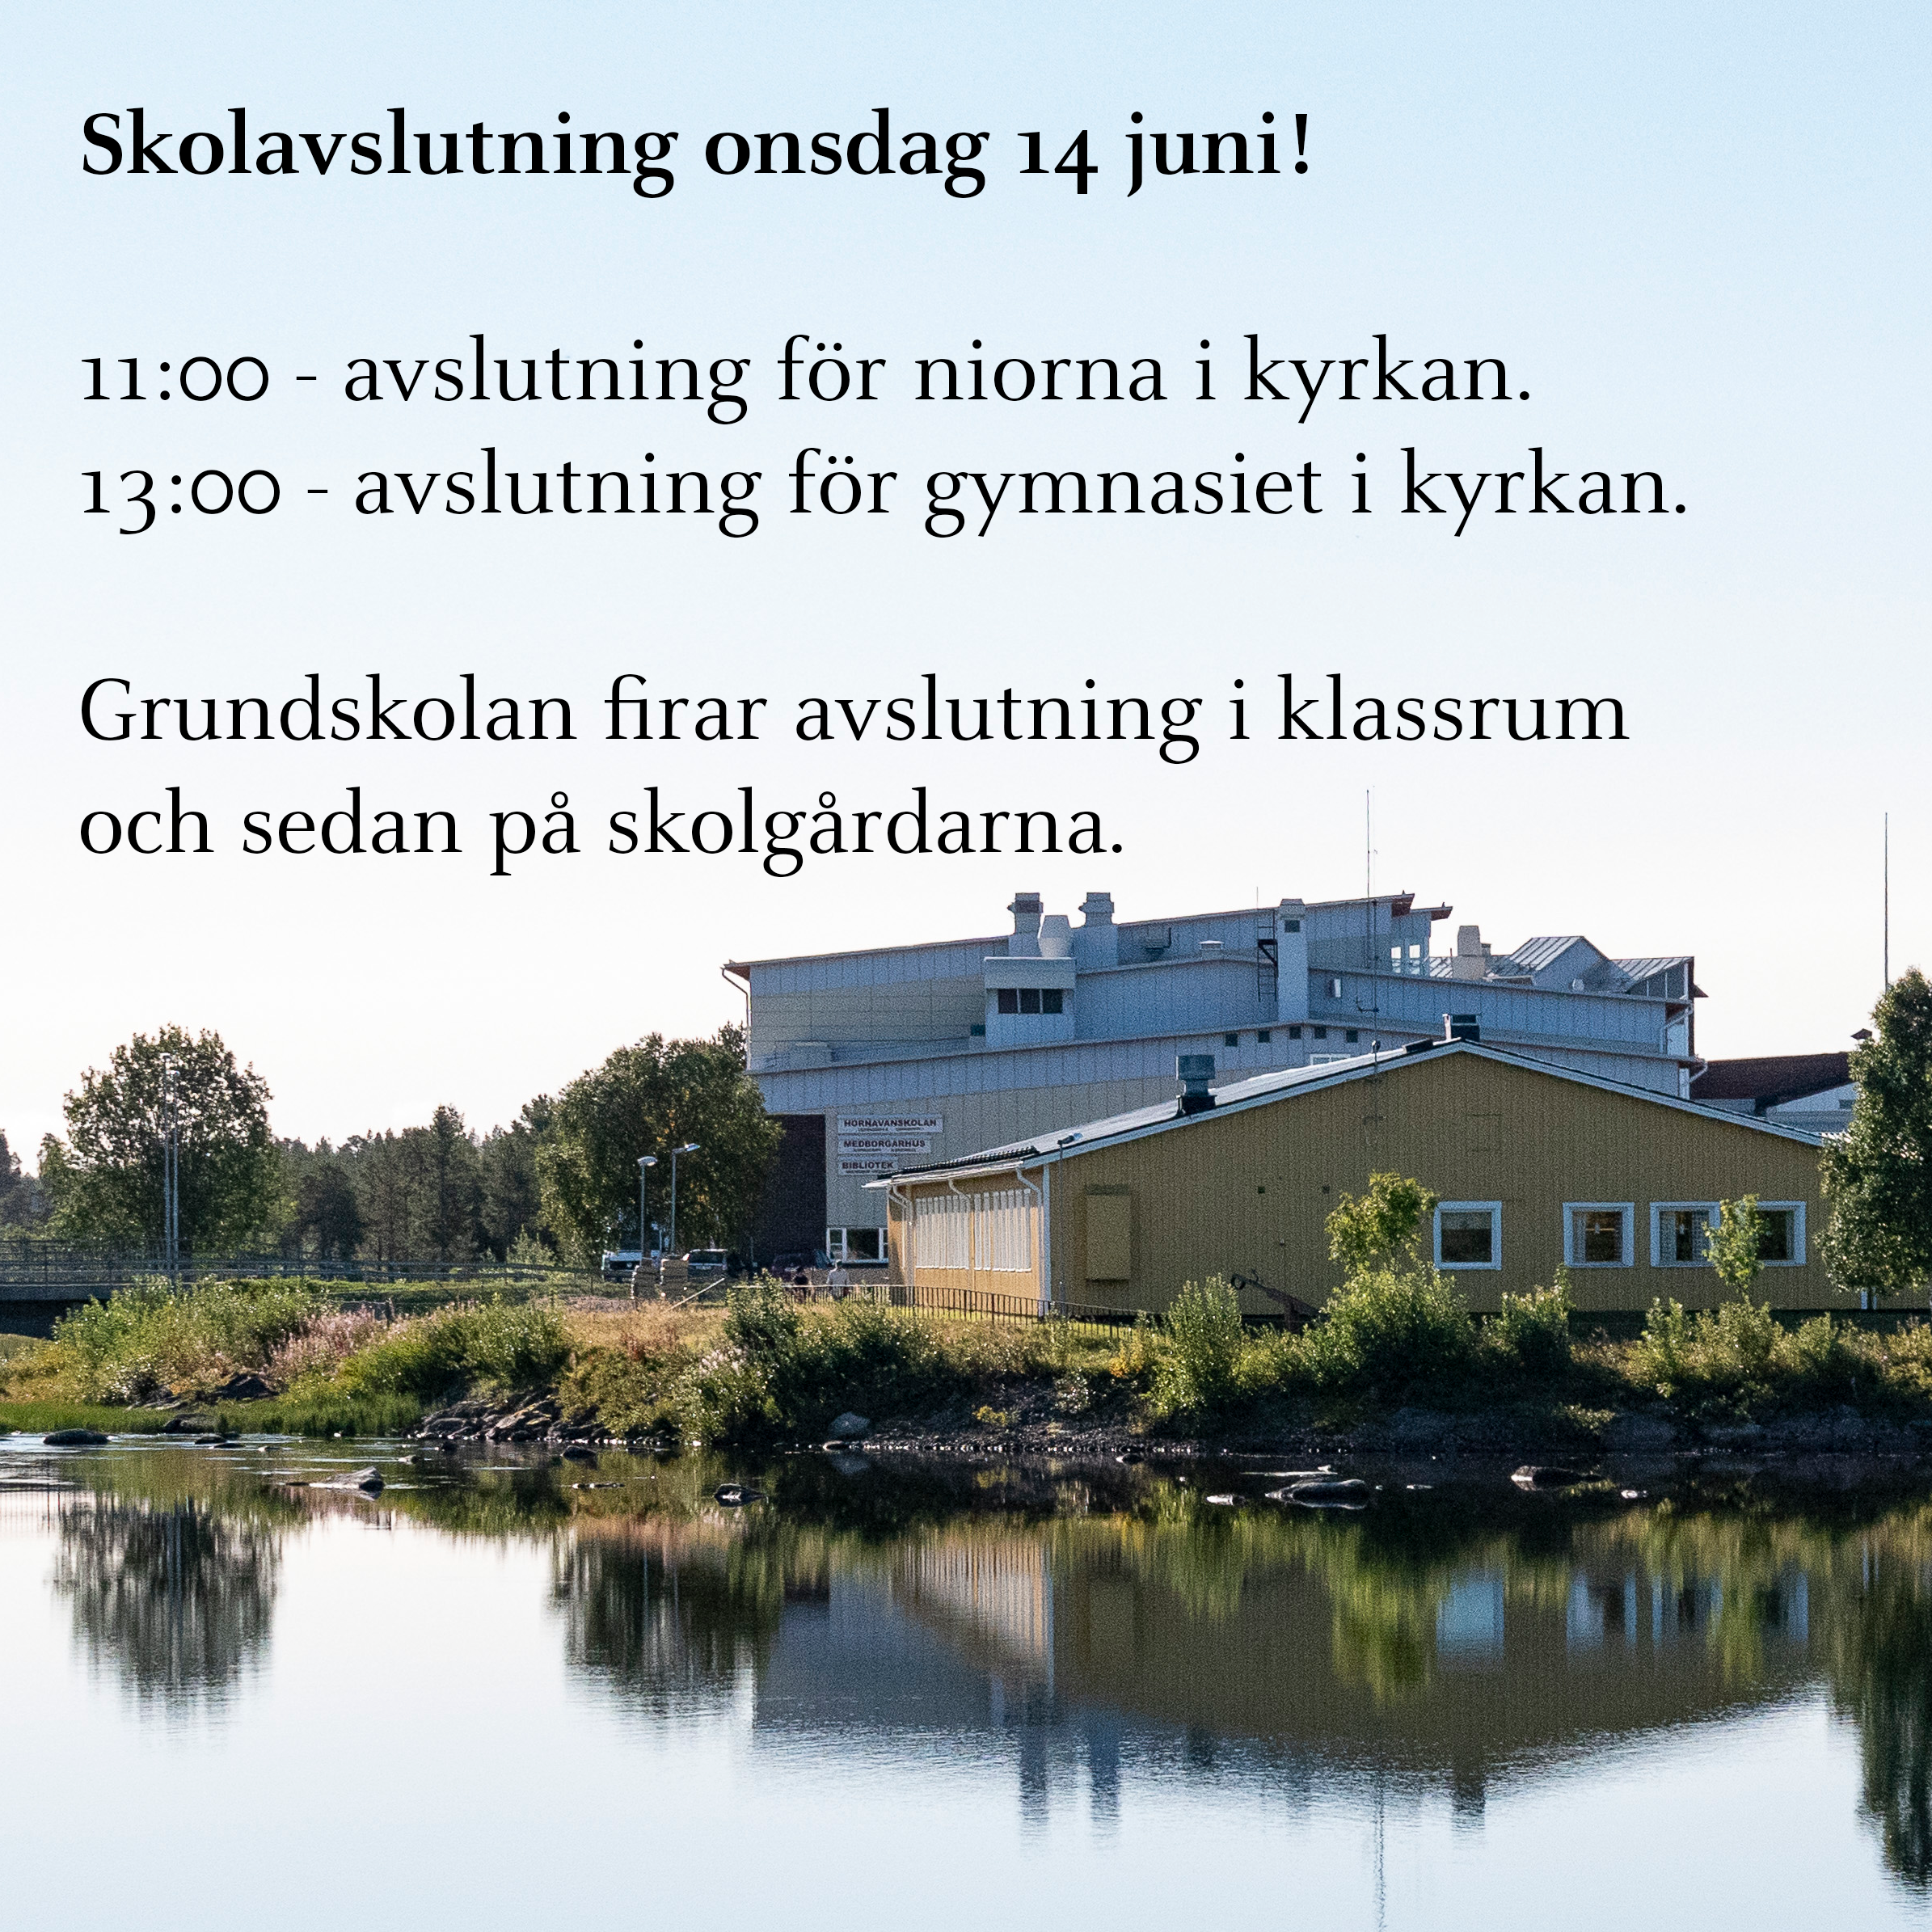 Bild på Öbergaskolan från vattnet.